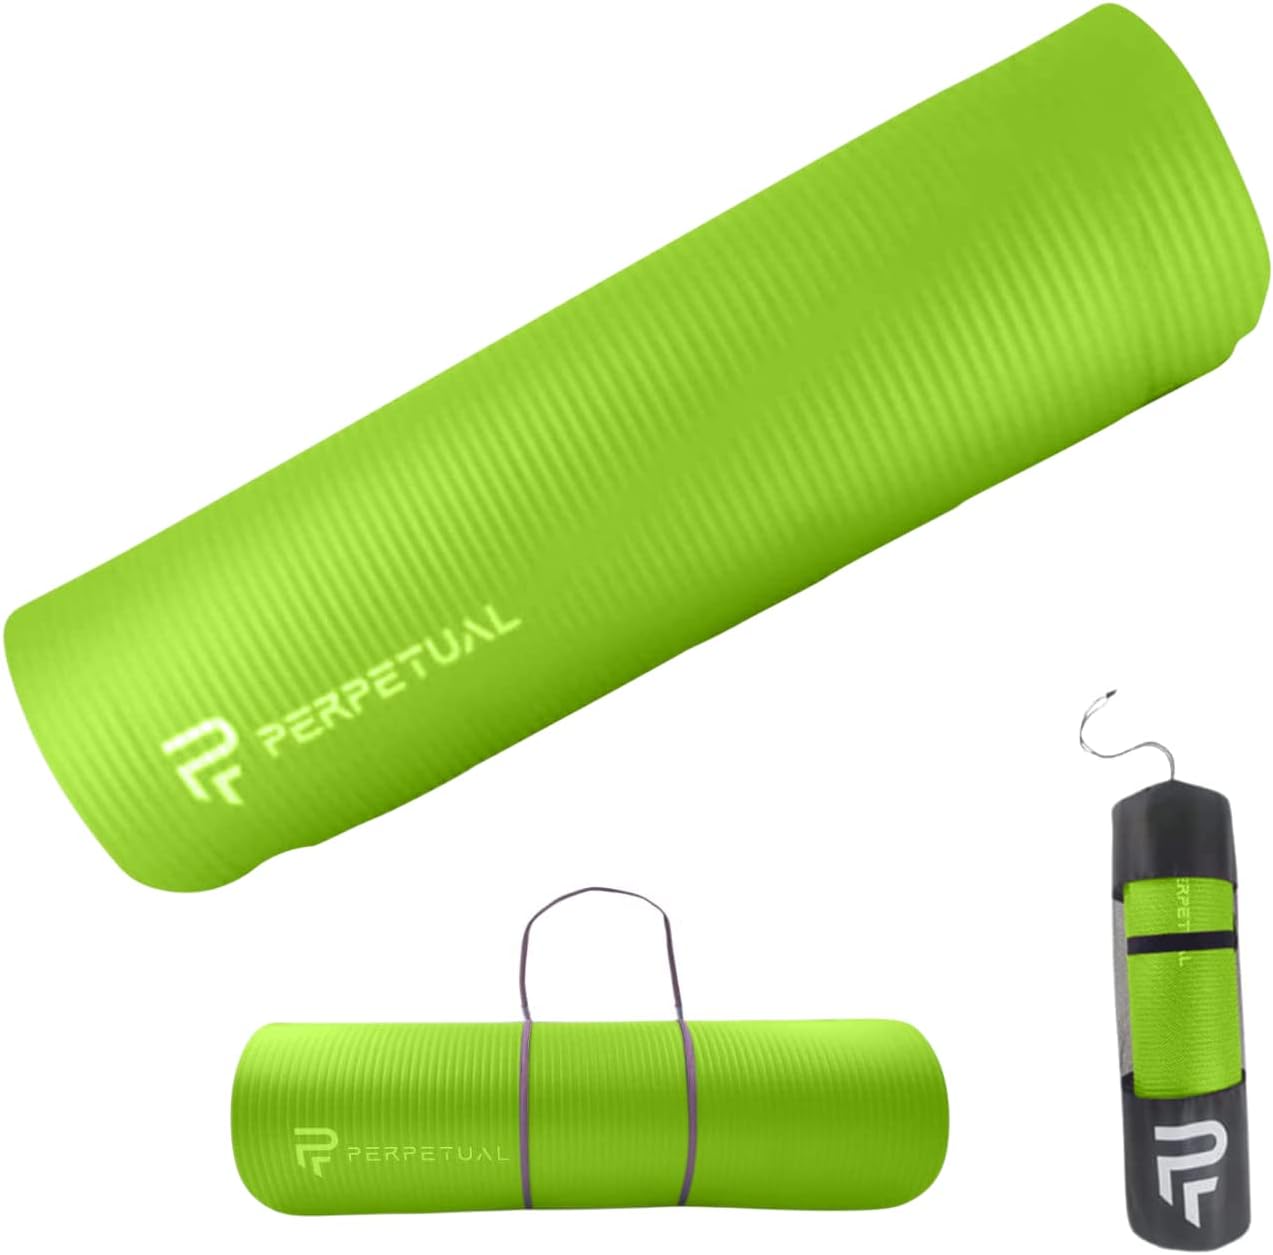 Esterilla De Yoga Y Pilates Antideslizante De 10mm Perpetual Con Correa Y Bolsa De Transporte - verde - 